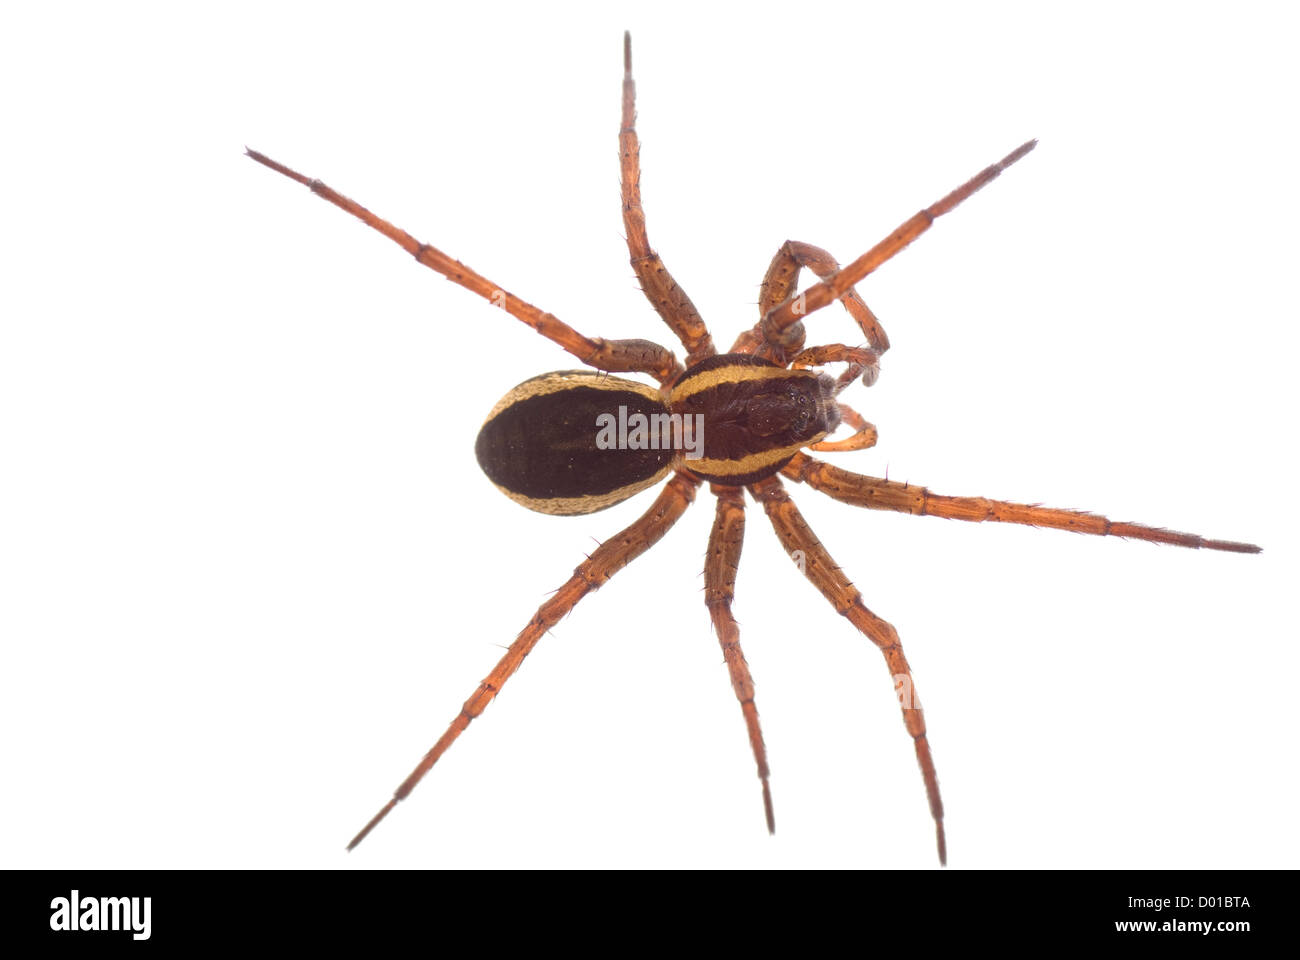 Big brown araignée effrayante sur fond blanc Banque D'Images